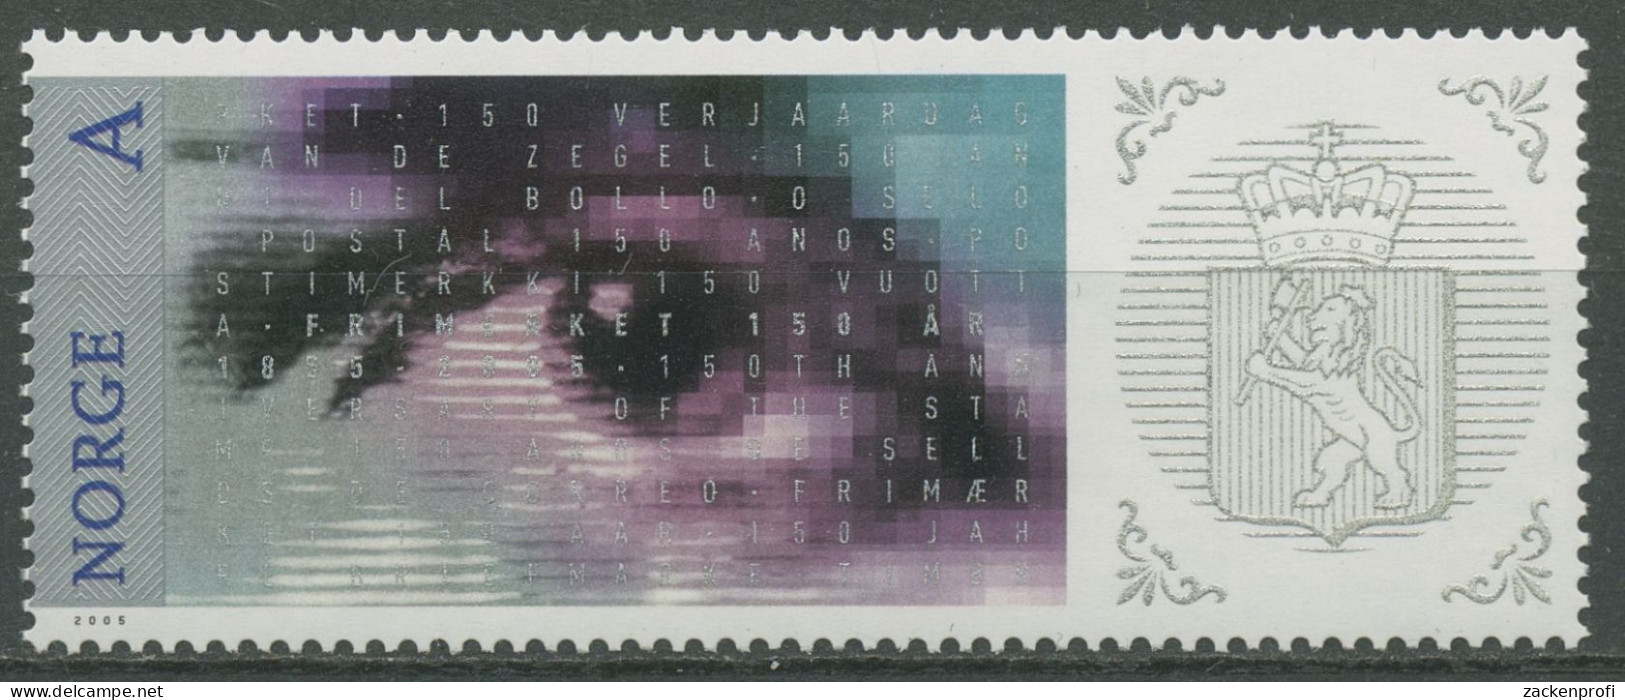 Norwegen 2005 Briefmarken Motiv MiNr.1, Auge 1554 Postfrisch - Ungebraucht